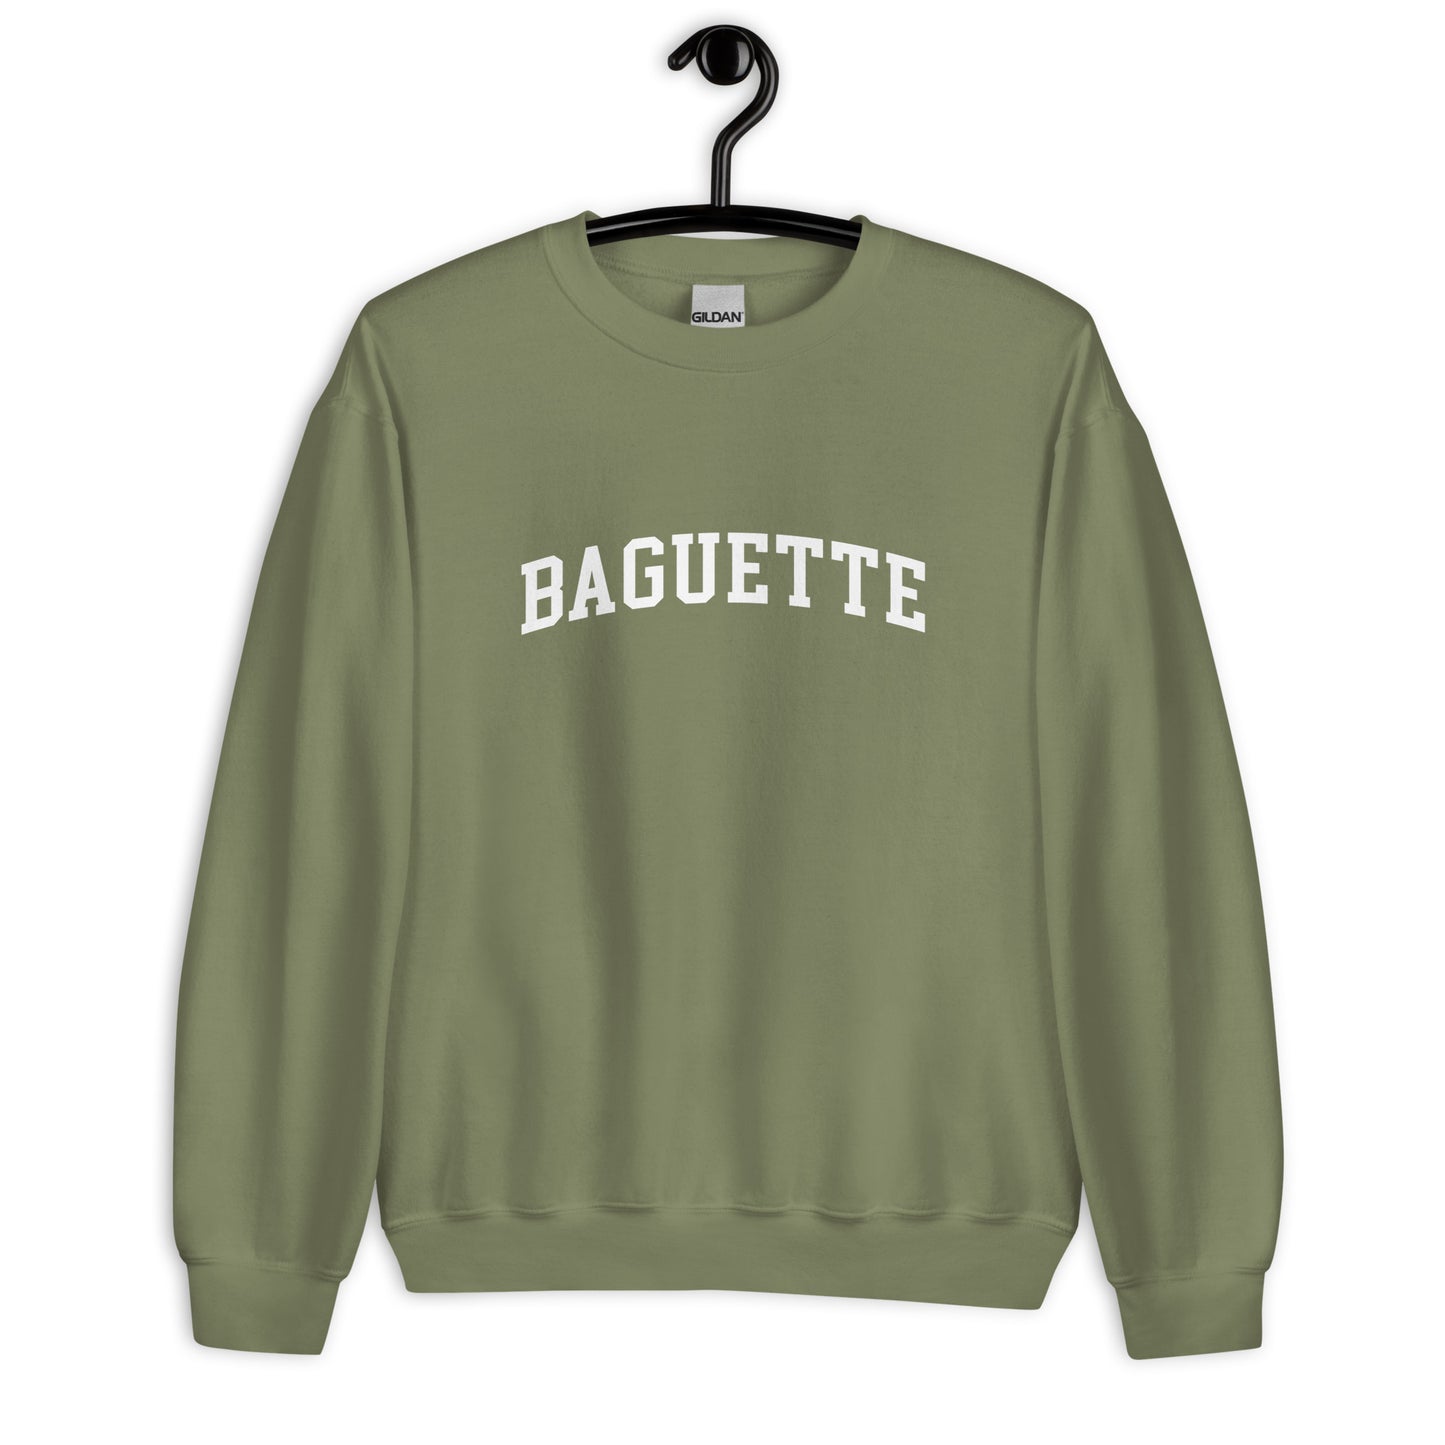 Baguette Sweatshirt - Arched Font